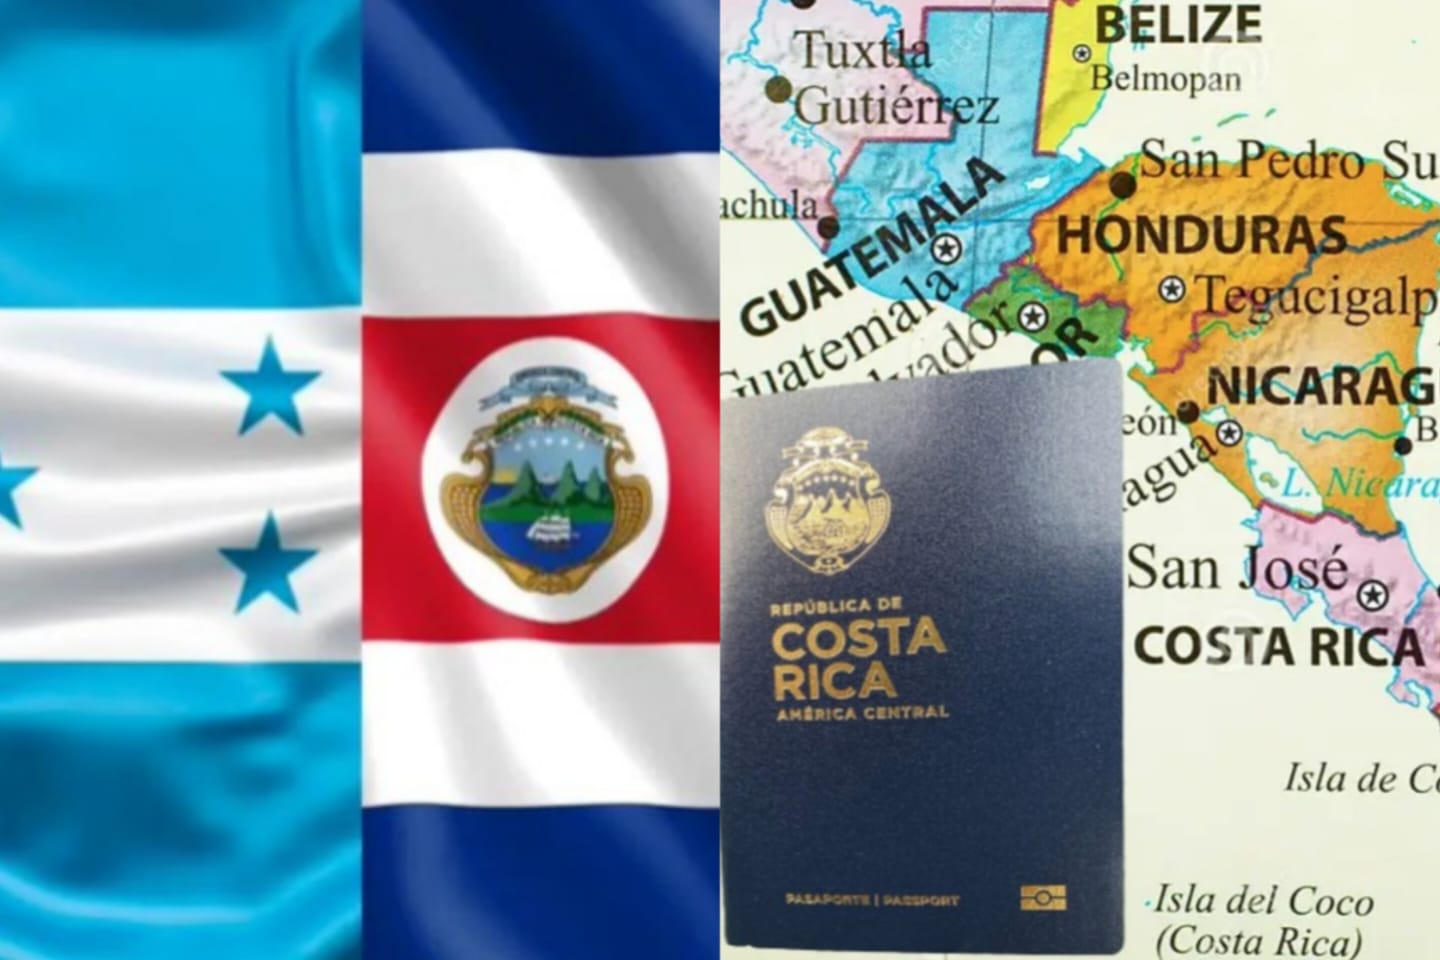 Unas 7 de cada 10 empresas en Costa Rica son “afectadas” tras aplicación de reciprocidad